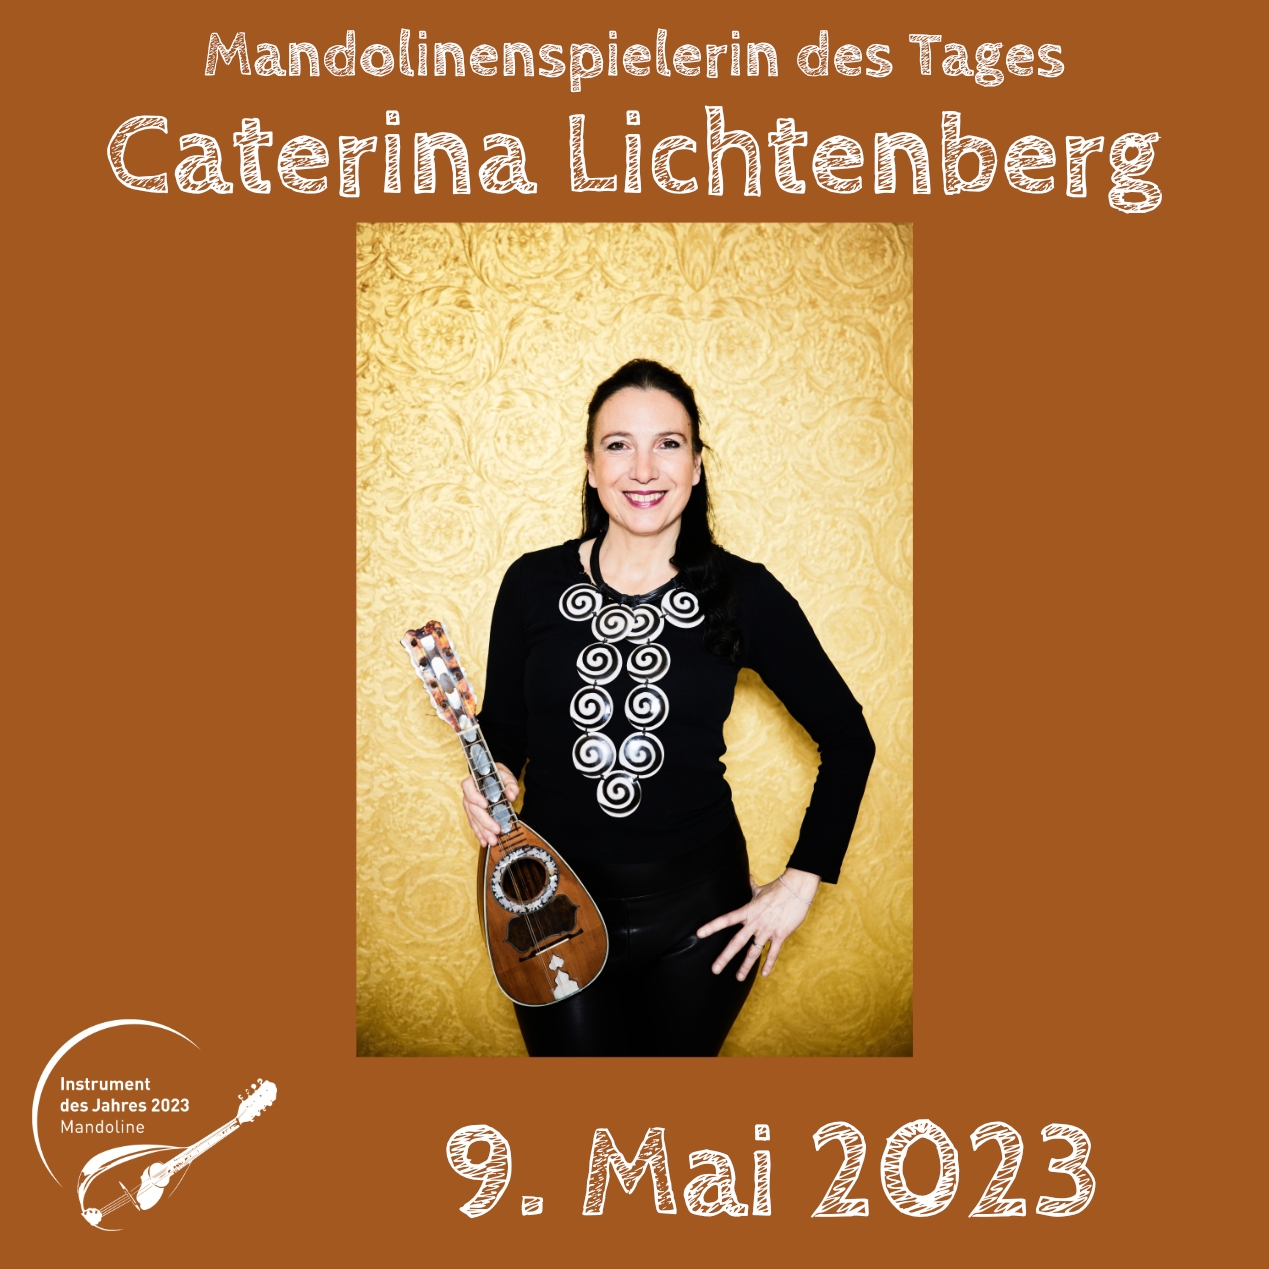 Caterina Lichtenberg Mandoline Instrument des Jahres 2023 Mandolinenspieler Mandolinenspielerin des Tages